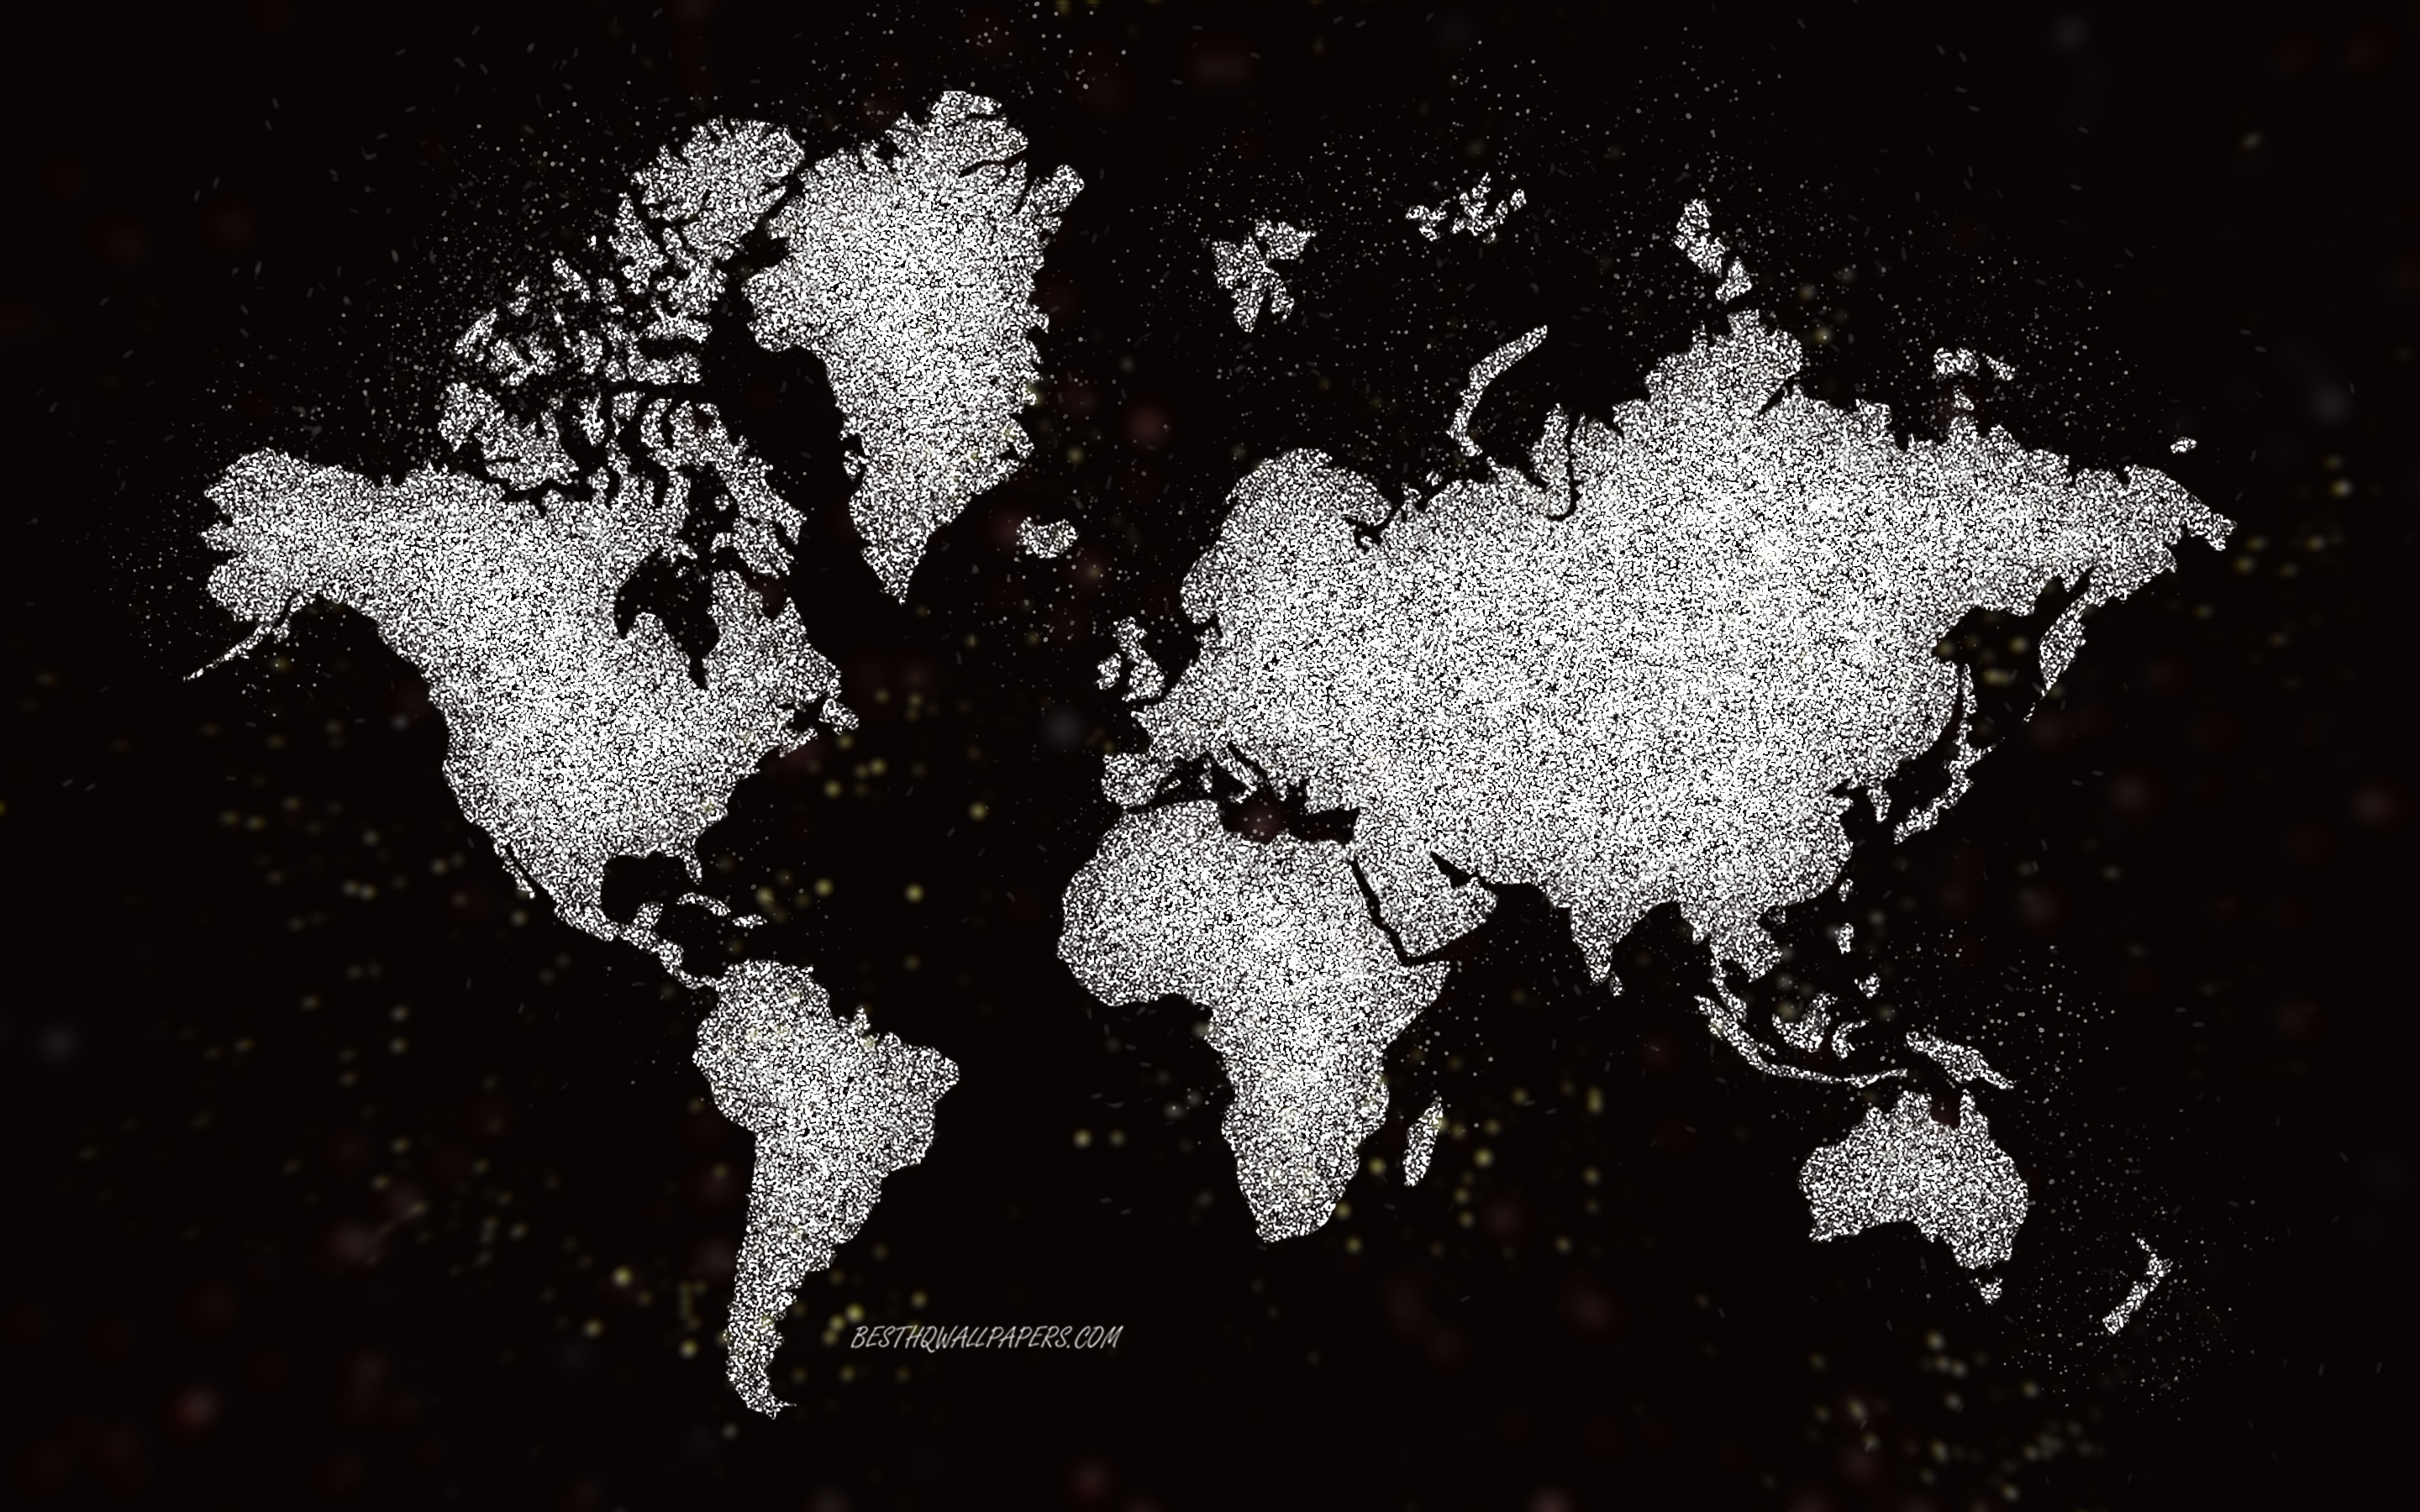 世界のキラキラマップ, 黒の背景, 世界地図, 白いキラキラアート, 世界地図の概念, クリエイティブアート, 世界の白い地図, 大陸地図